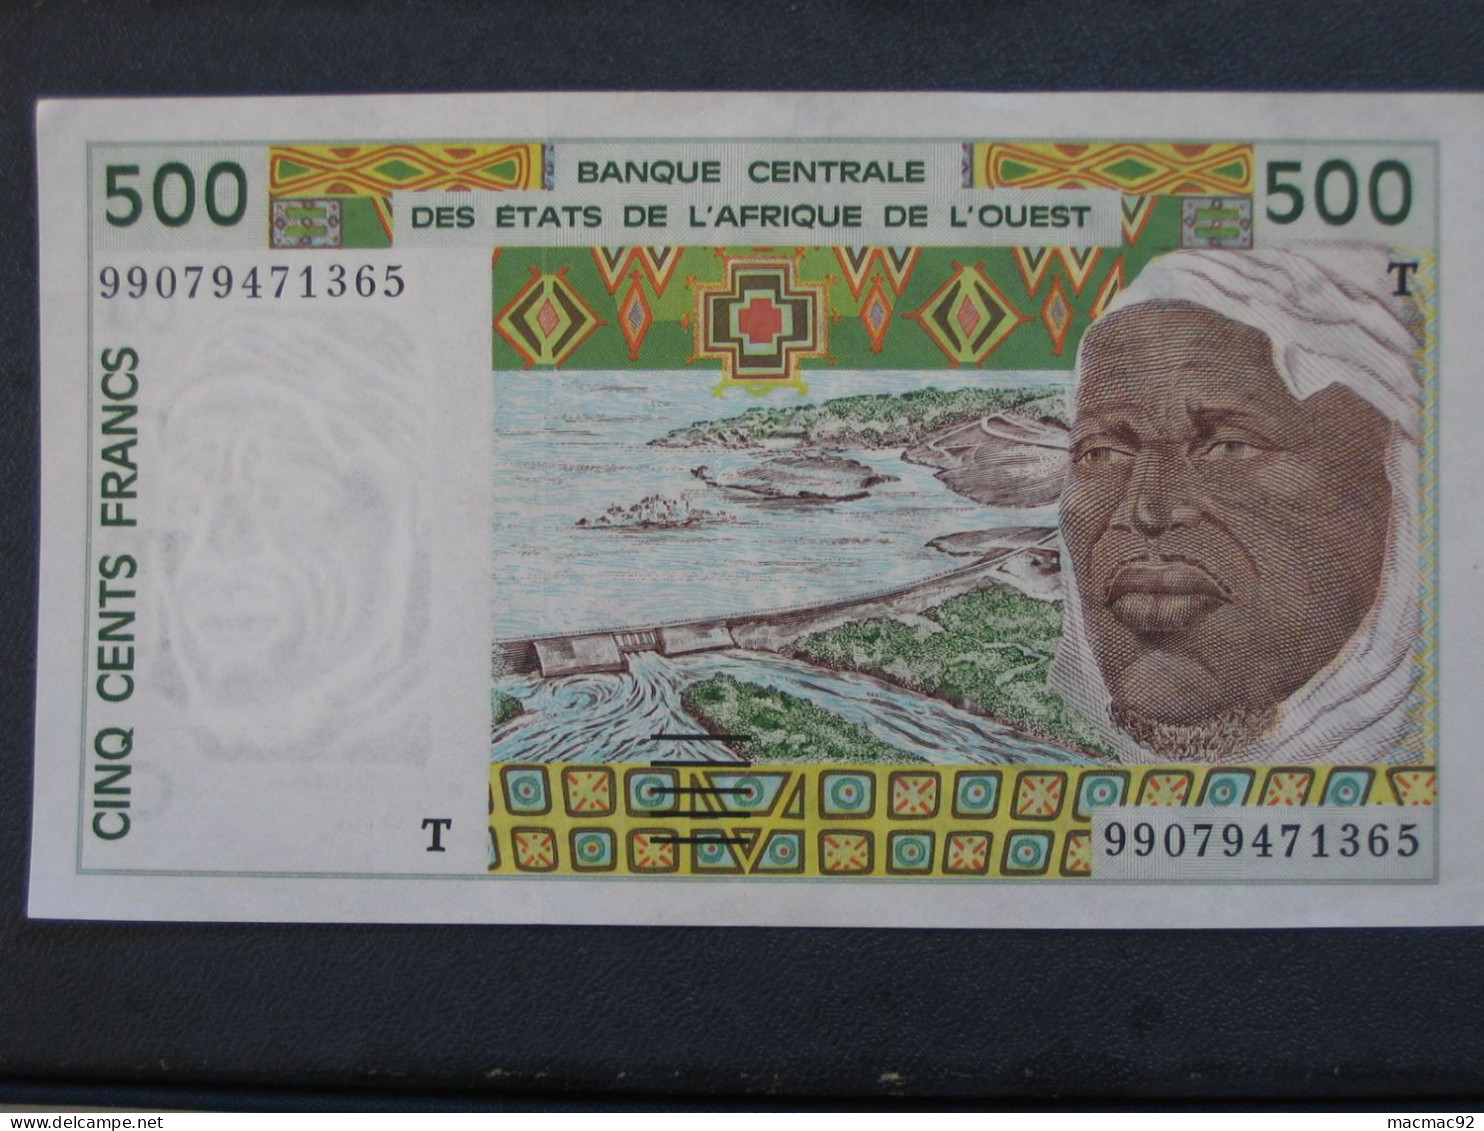 TOGO - 500 Cinq Cents Francs 1999 - Banque Centrale Des états De L'Afrique De L'Ouest  **** EN ACHAT IMMEDIAT **** - Togo